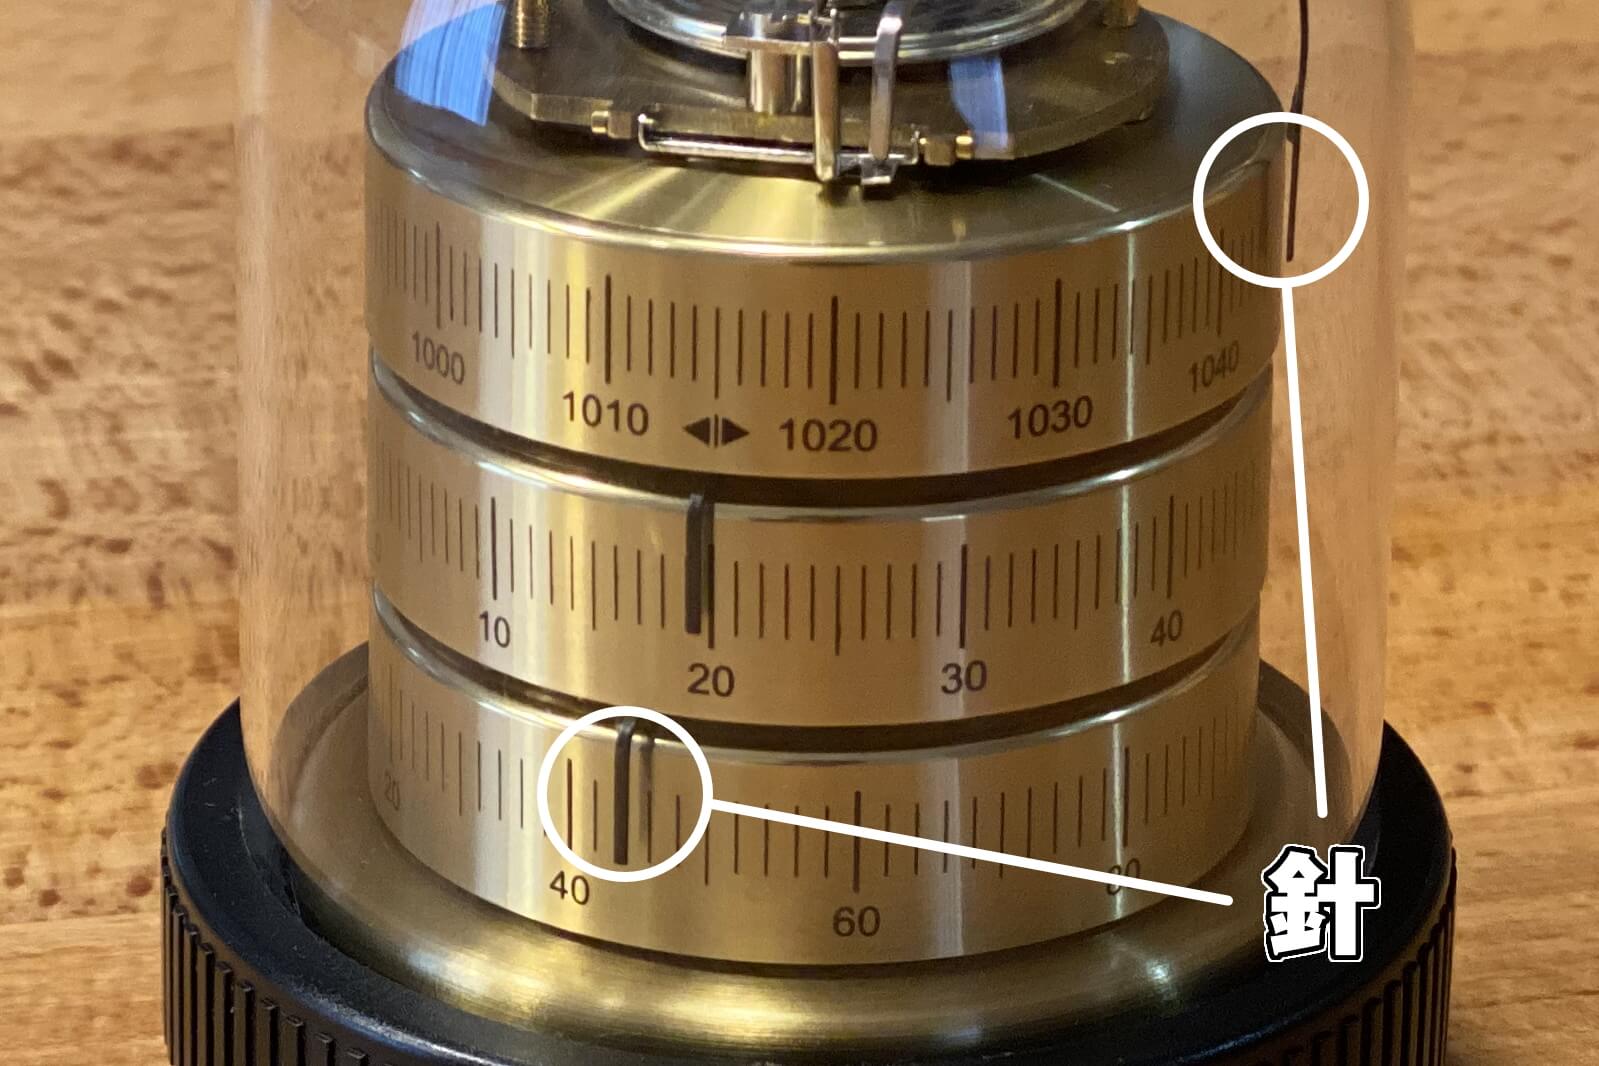 BARIGO バリゴ 温湿気圧計 レビュー】アクリルと真鍮製の本体が美しく 